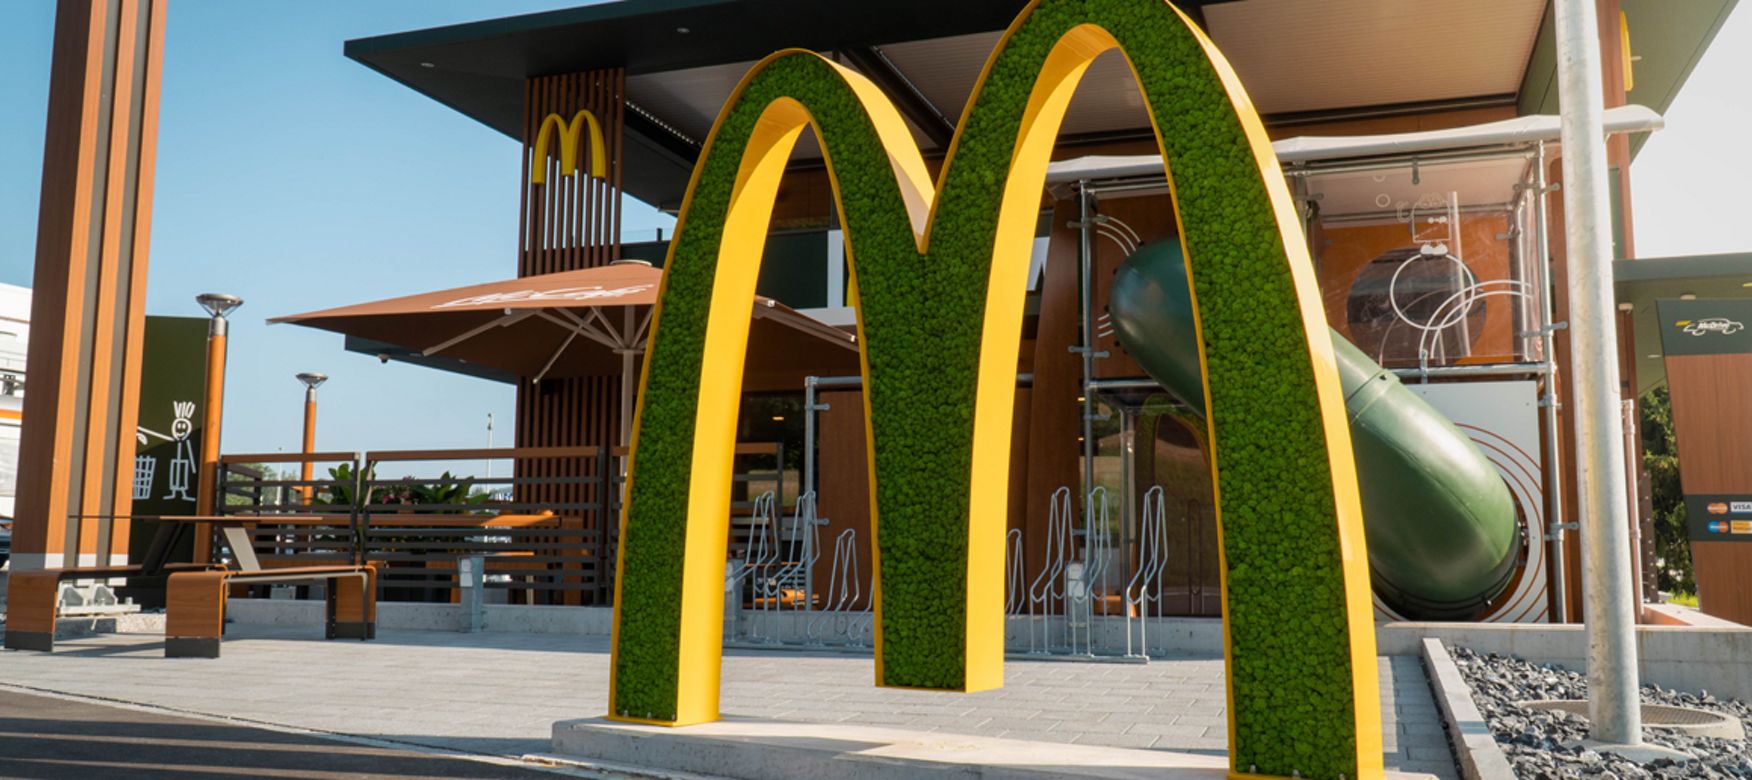 Le McDonald’s de demain